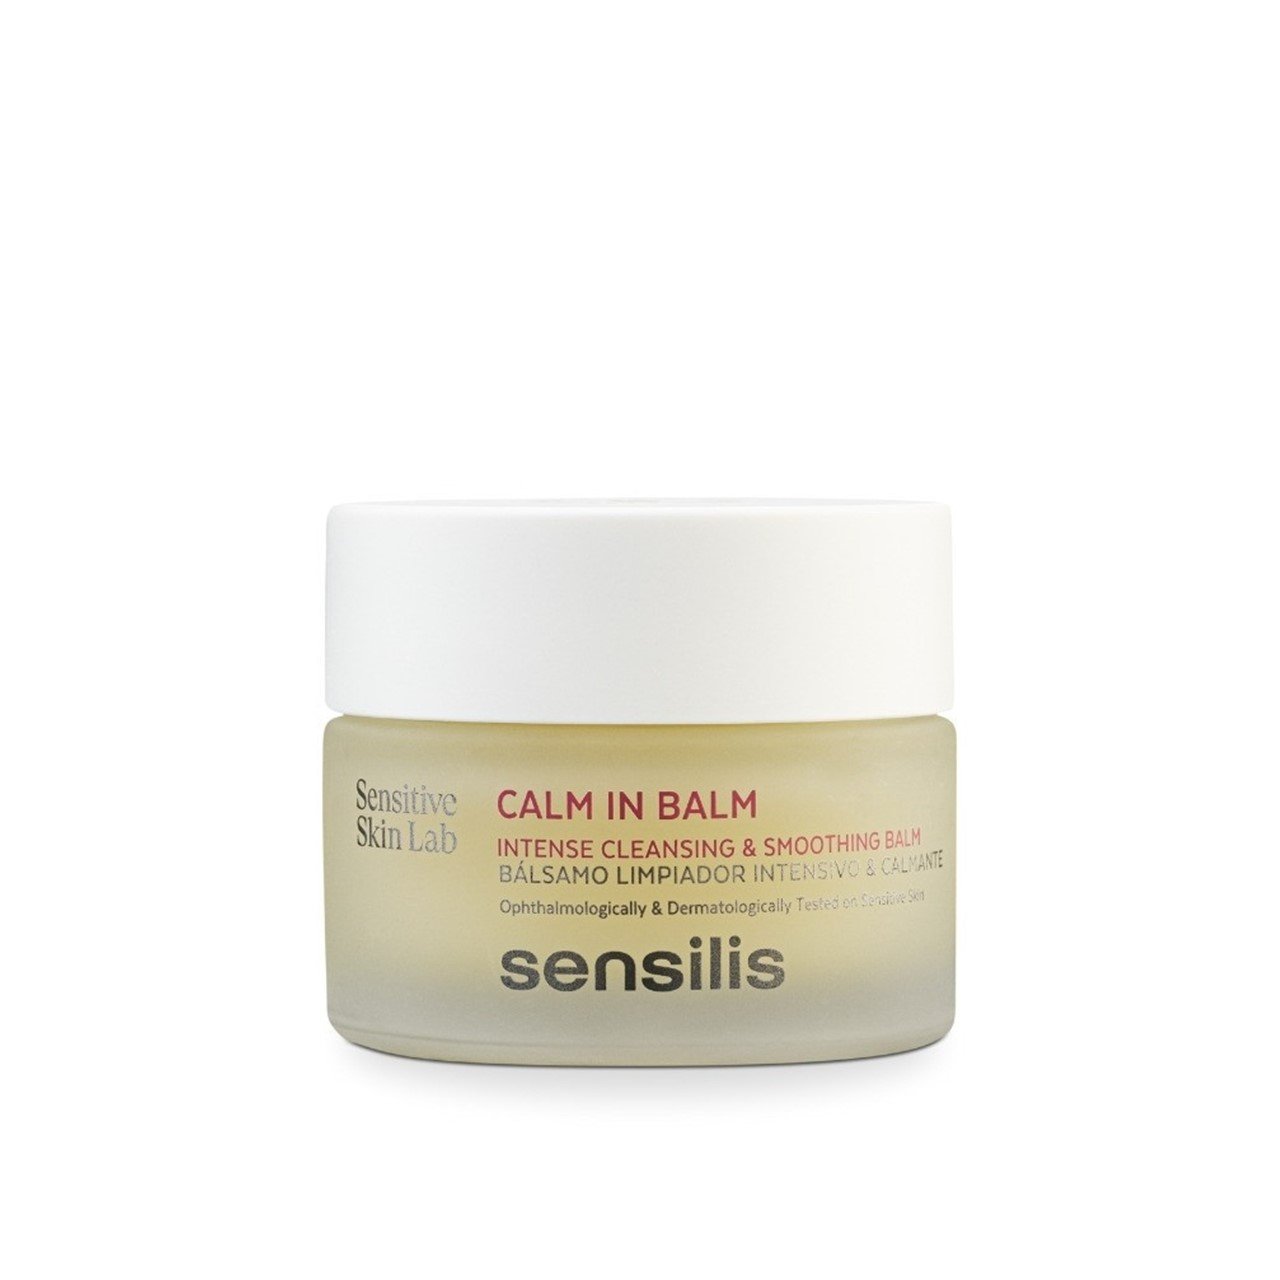 Sensilis Calm In Balm Intense Cleansing & Smoothing Balm 50ml (1.69fl oz)